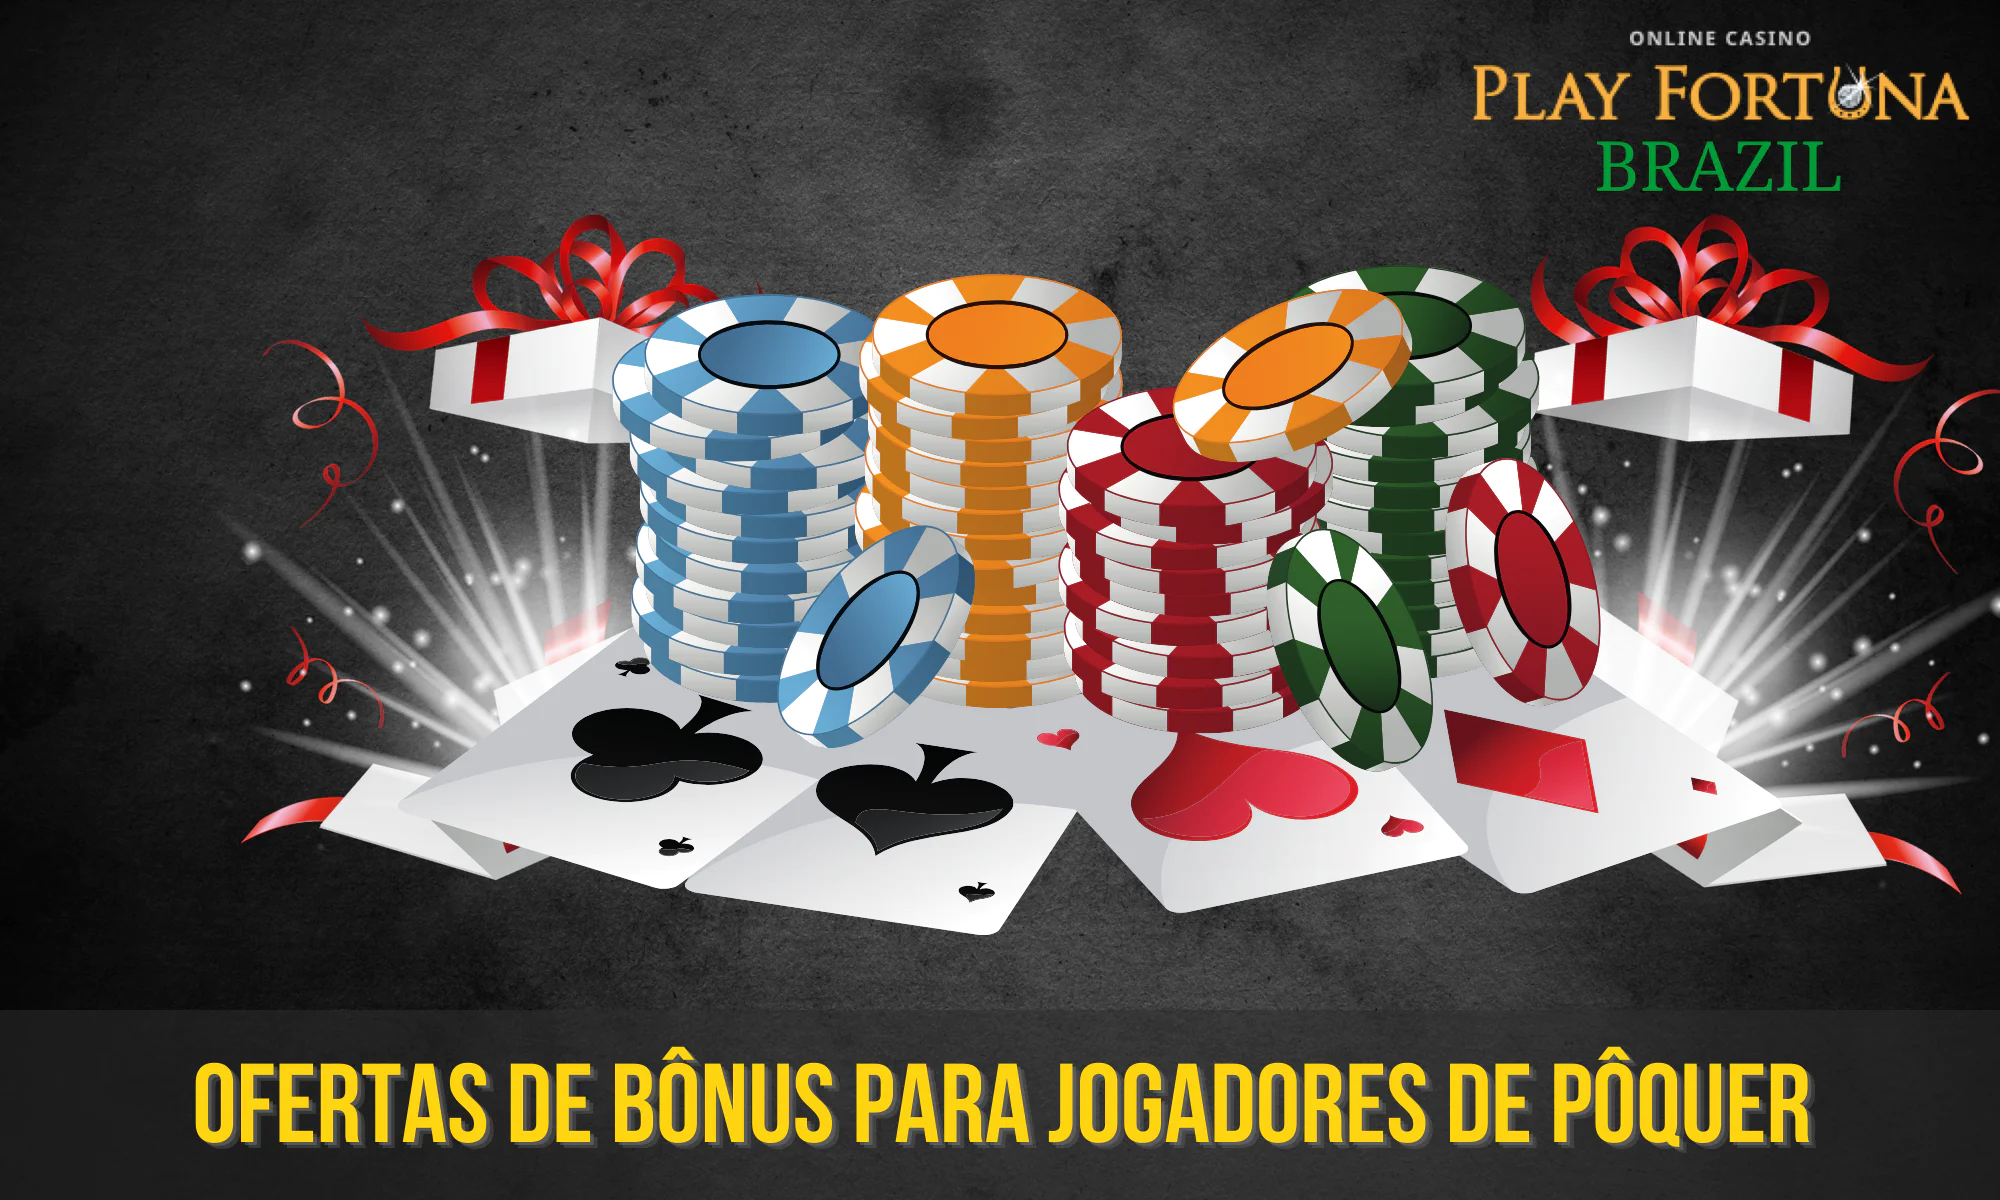 O Play Fortuna oferece uma grande variedade de bônus que podem ser usados ao jogar pôquer